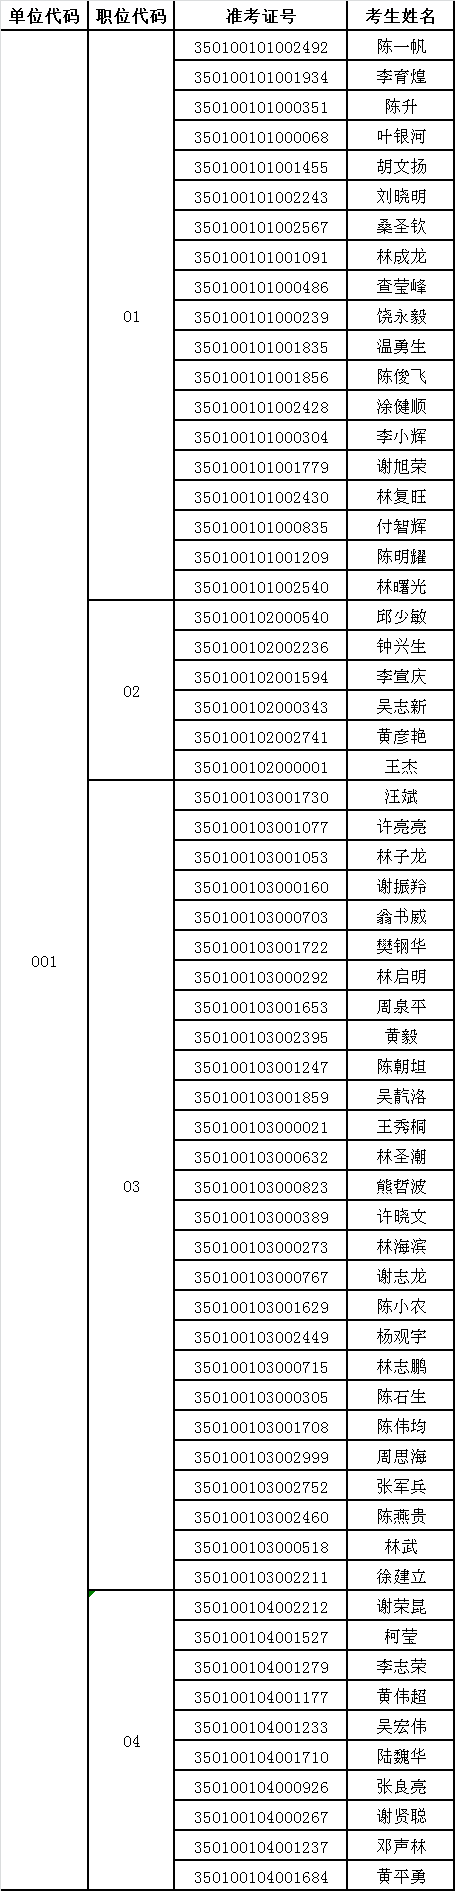 福建省纪委监察厅2015年遴选公务员拟进入面试人员名单.png